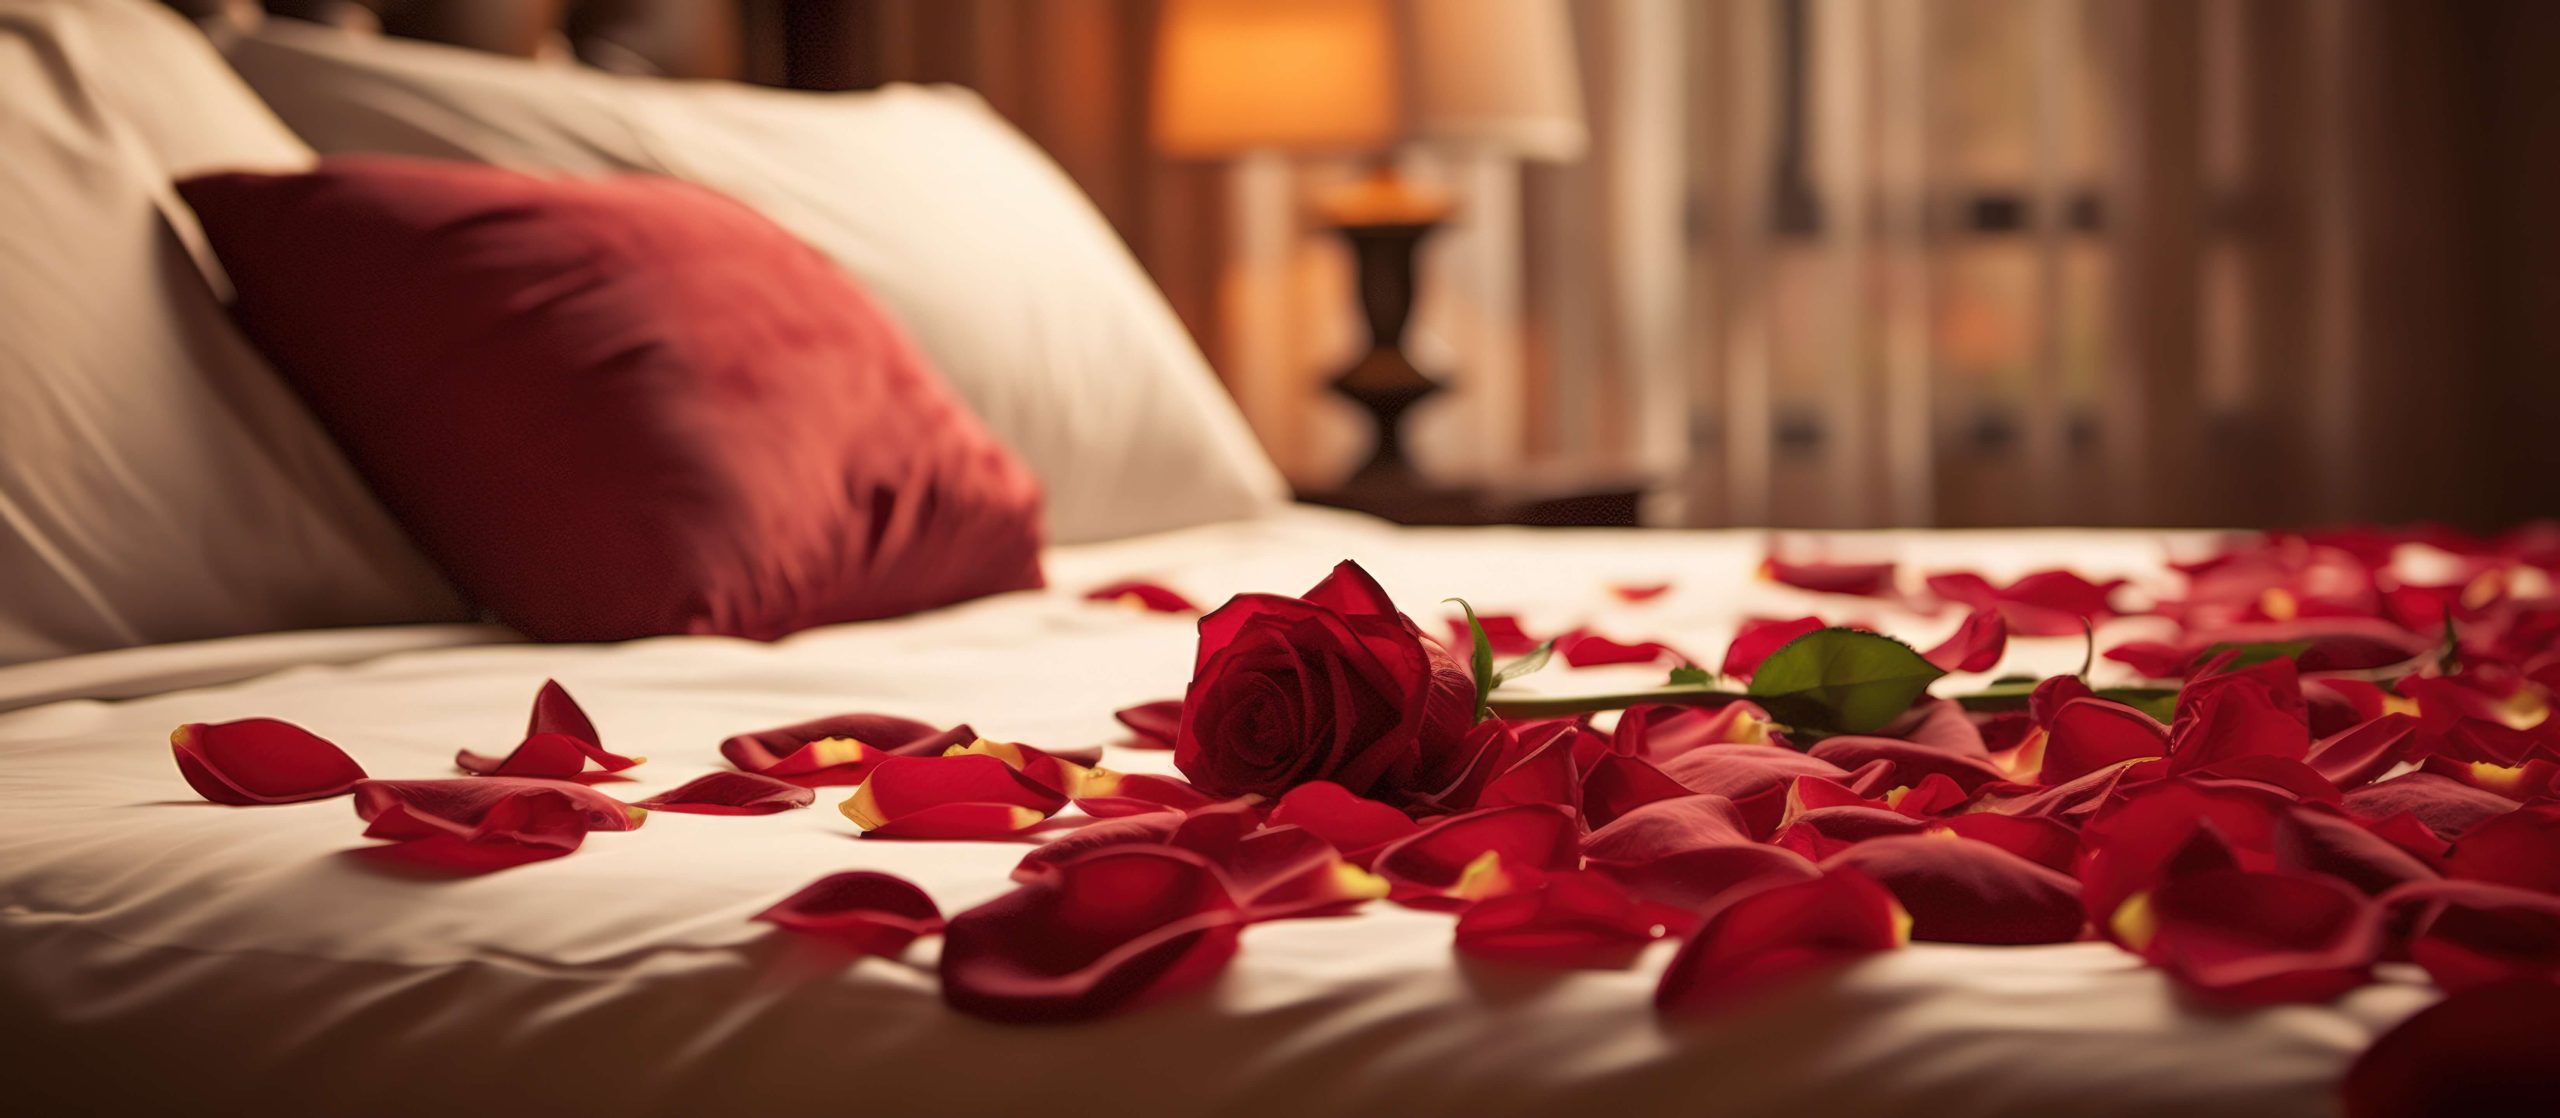 lit de chambre parentale recouvert de pétale de roses et d'une rose rouge